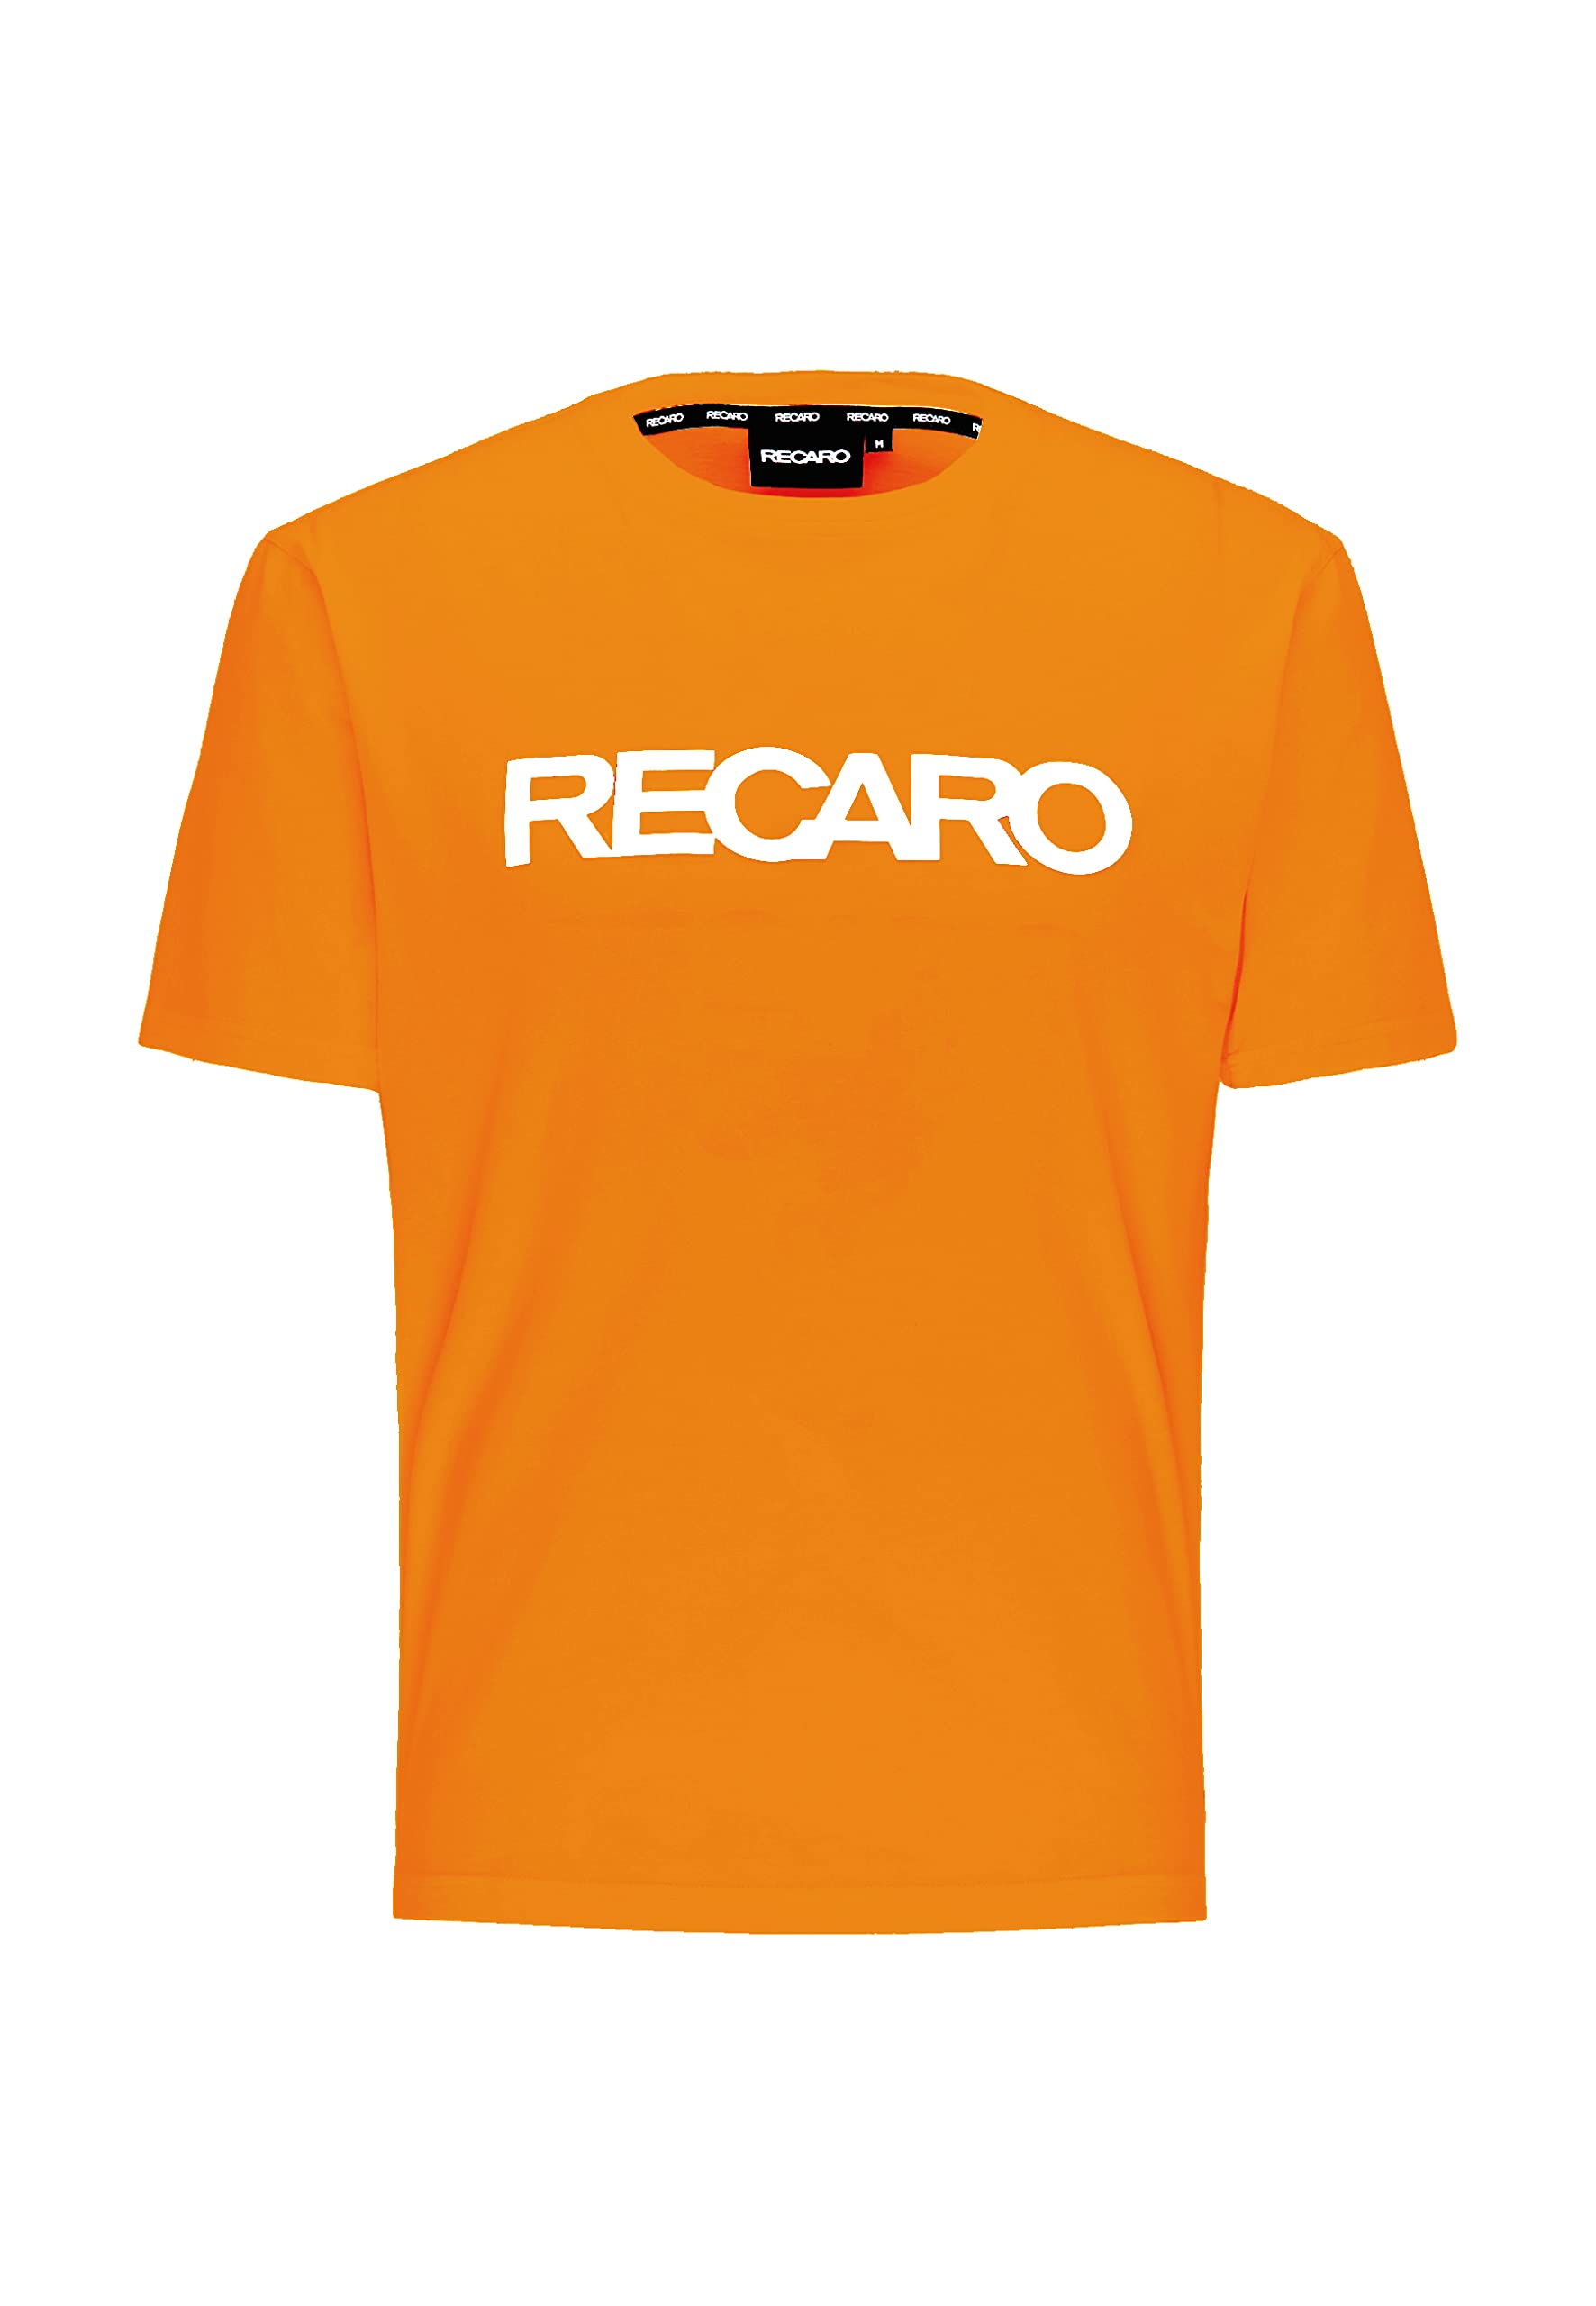 RECARO T-Shirt Originals | Herren Shirt, Rundhals | 100% Baumwolle | Made in Europe, Farbe:Orange, Größe:M